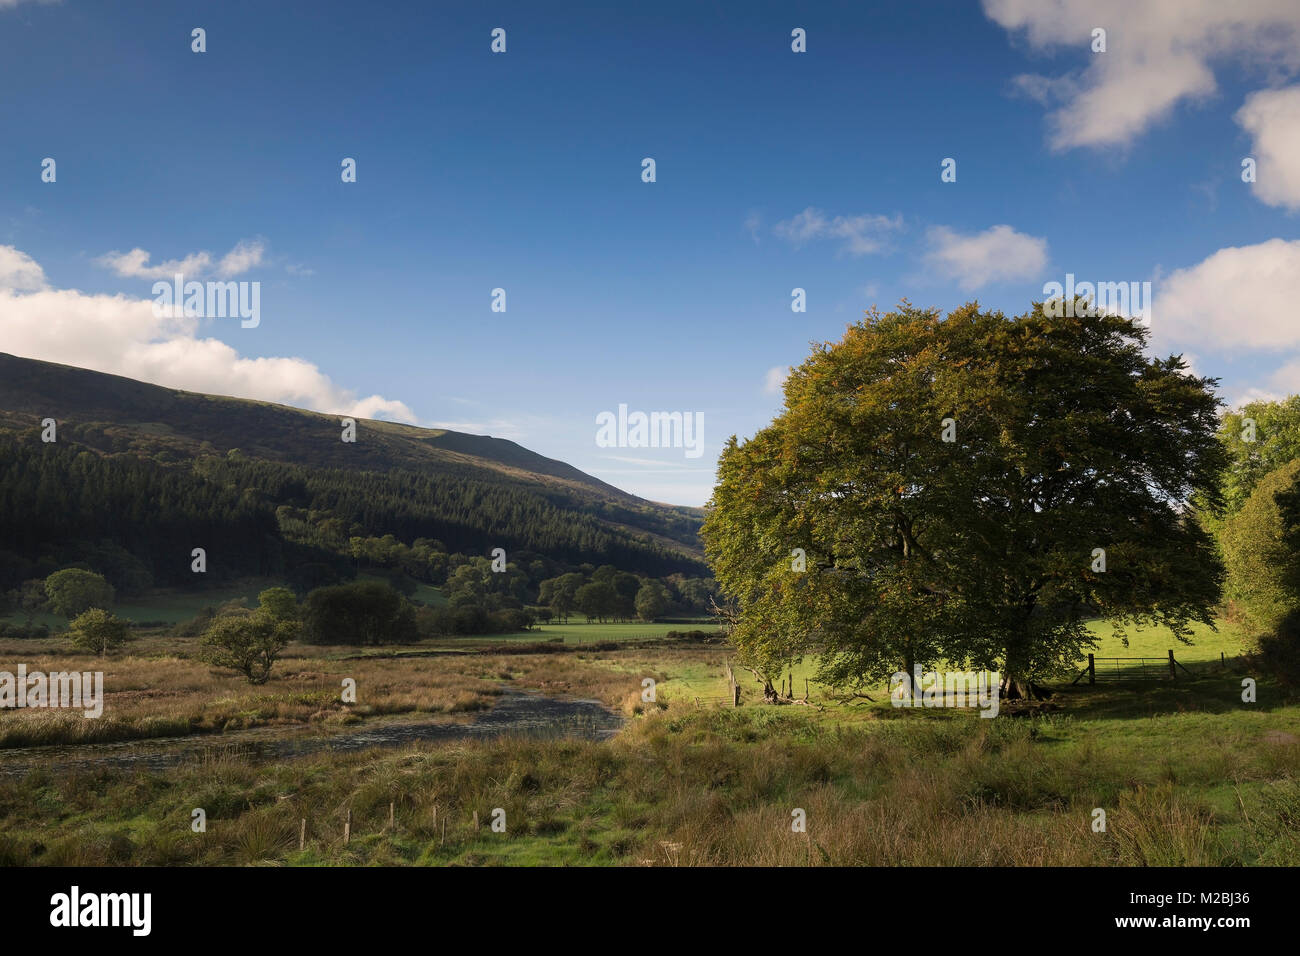 Una imagen de un hermoso valle galés situado al borde del depósito Talybont, Powys, Gales, Reino Unido Foto de stock